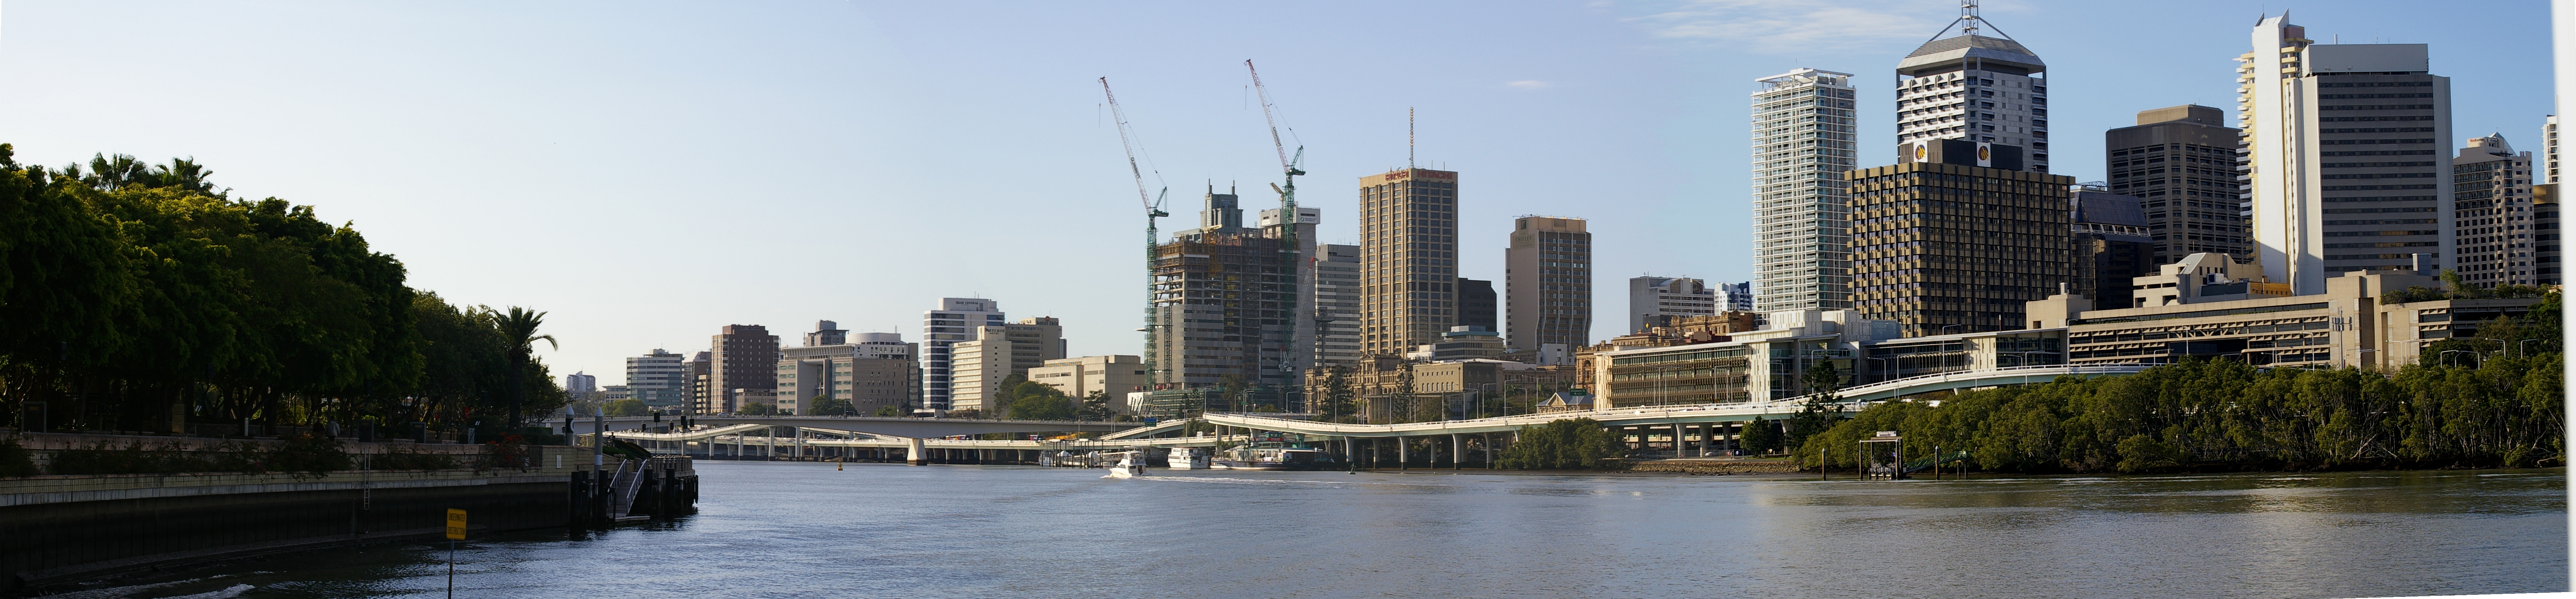 Description Vue panoramique de Brisbane.jpg